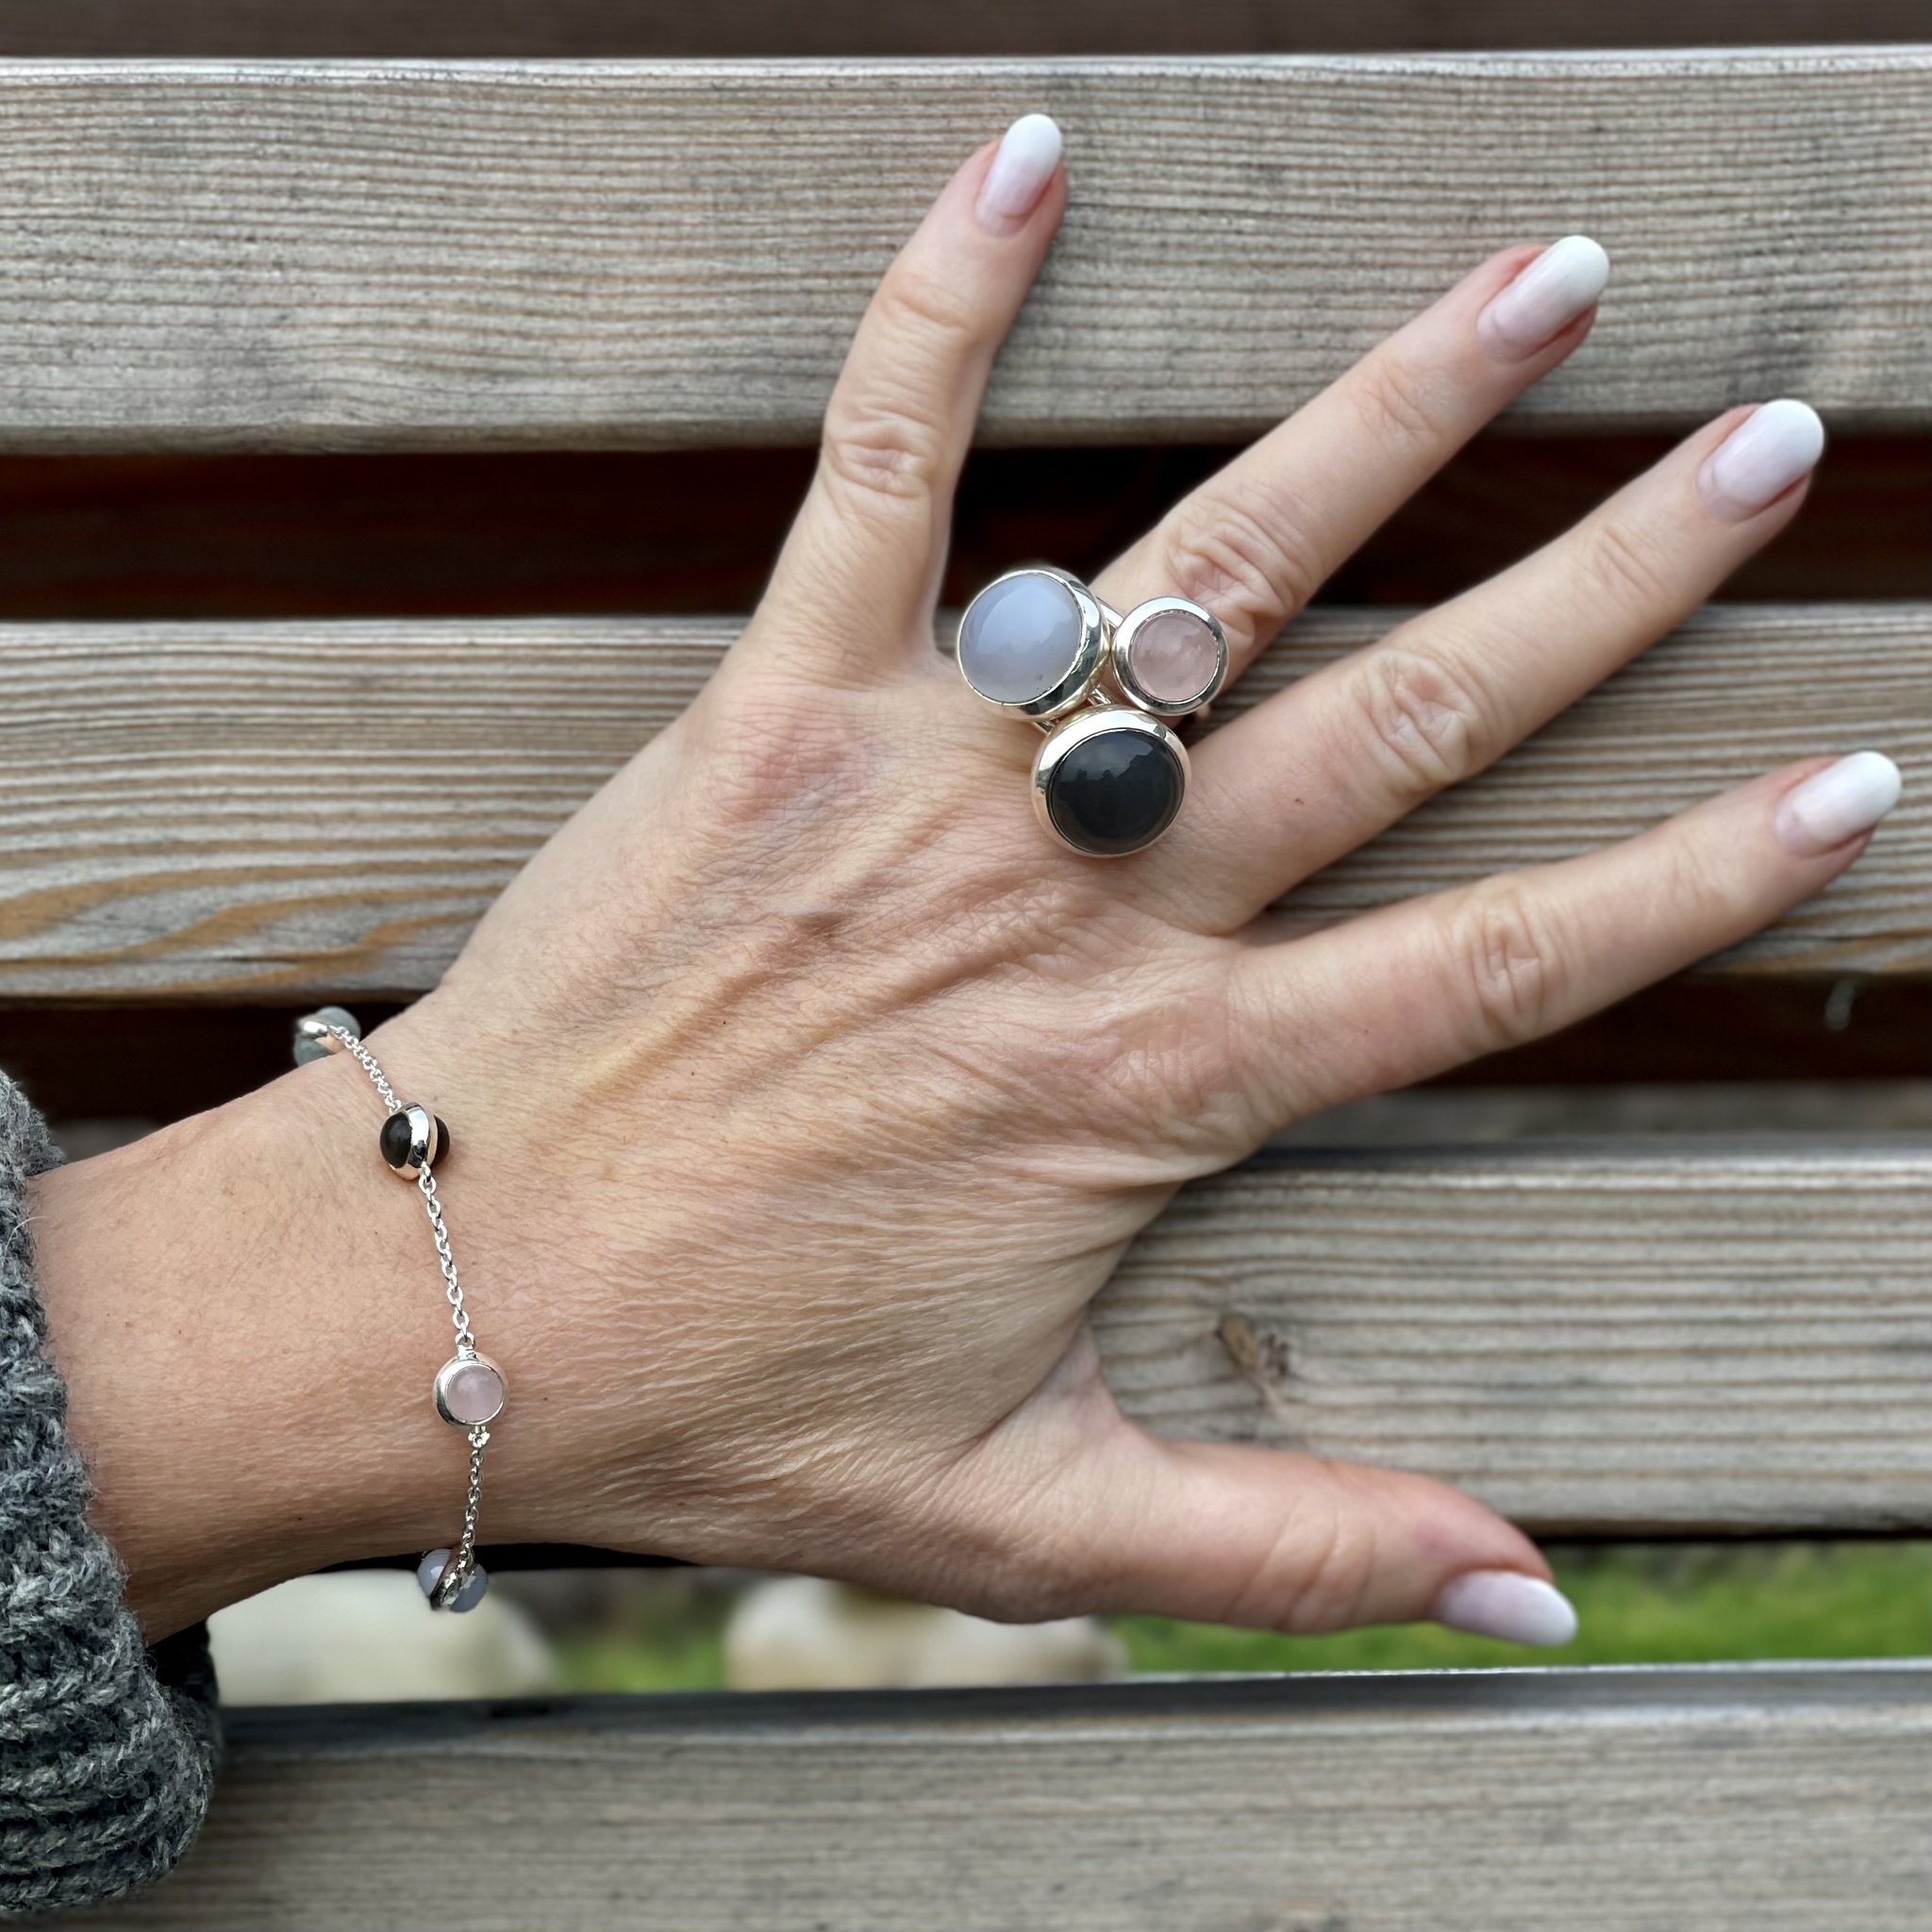 Silverarmband med naturliga stenar och matchande silverringar. Silver bracelet with natural stones and matching silver rings.